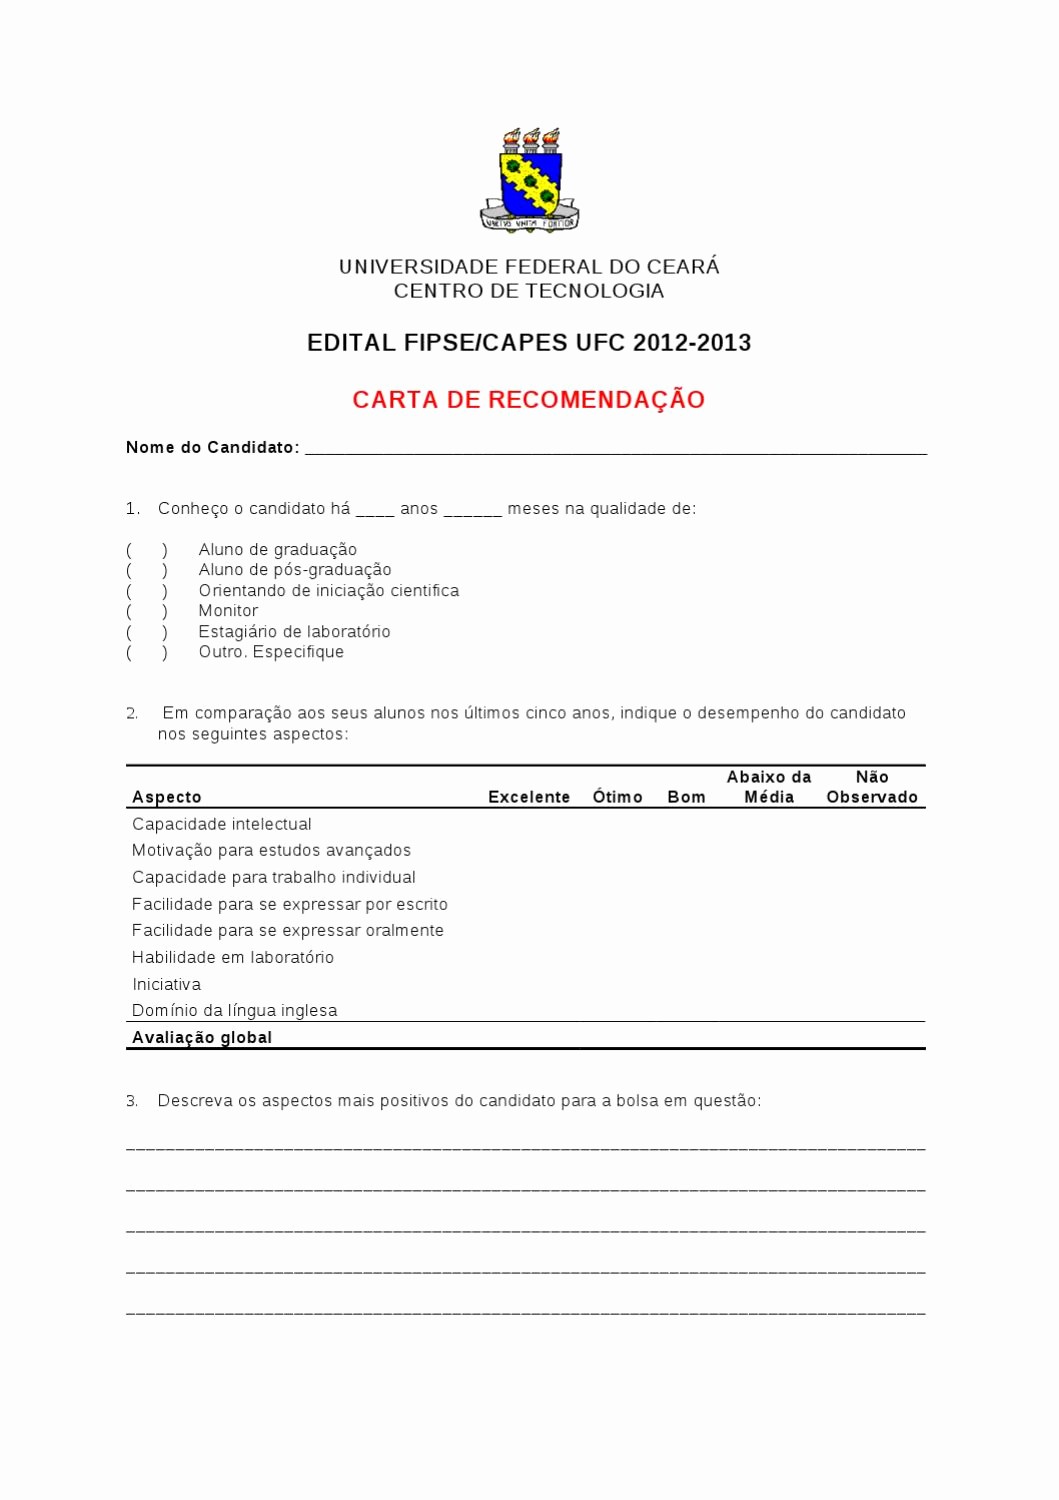 Modelos De Carta De Recomendacao New Modelo De Carta De Re Endação Edital Fipse Capes by